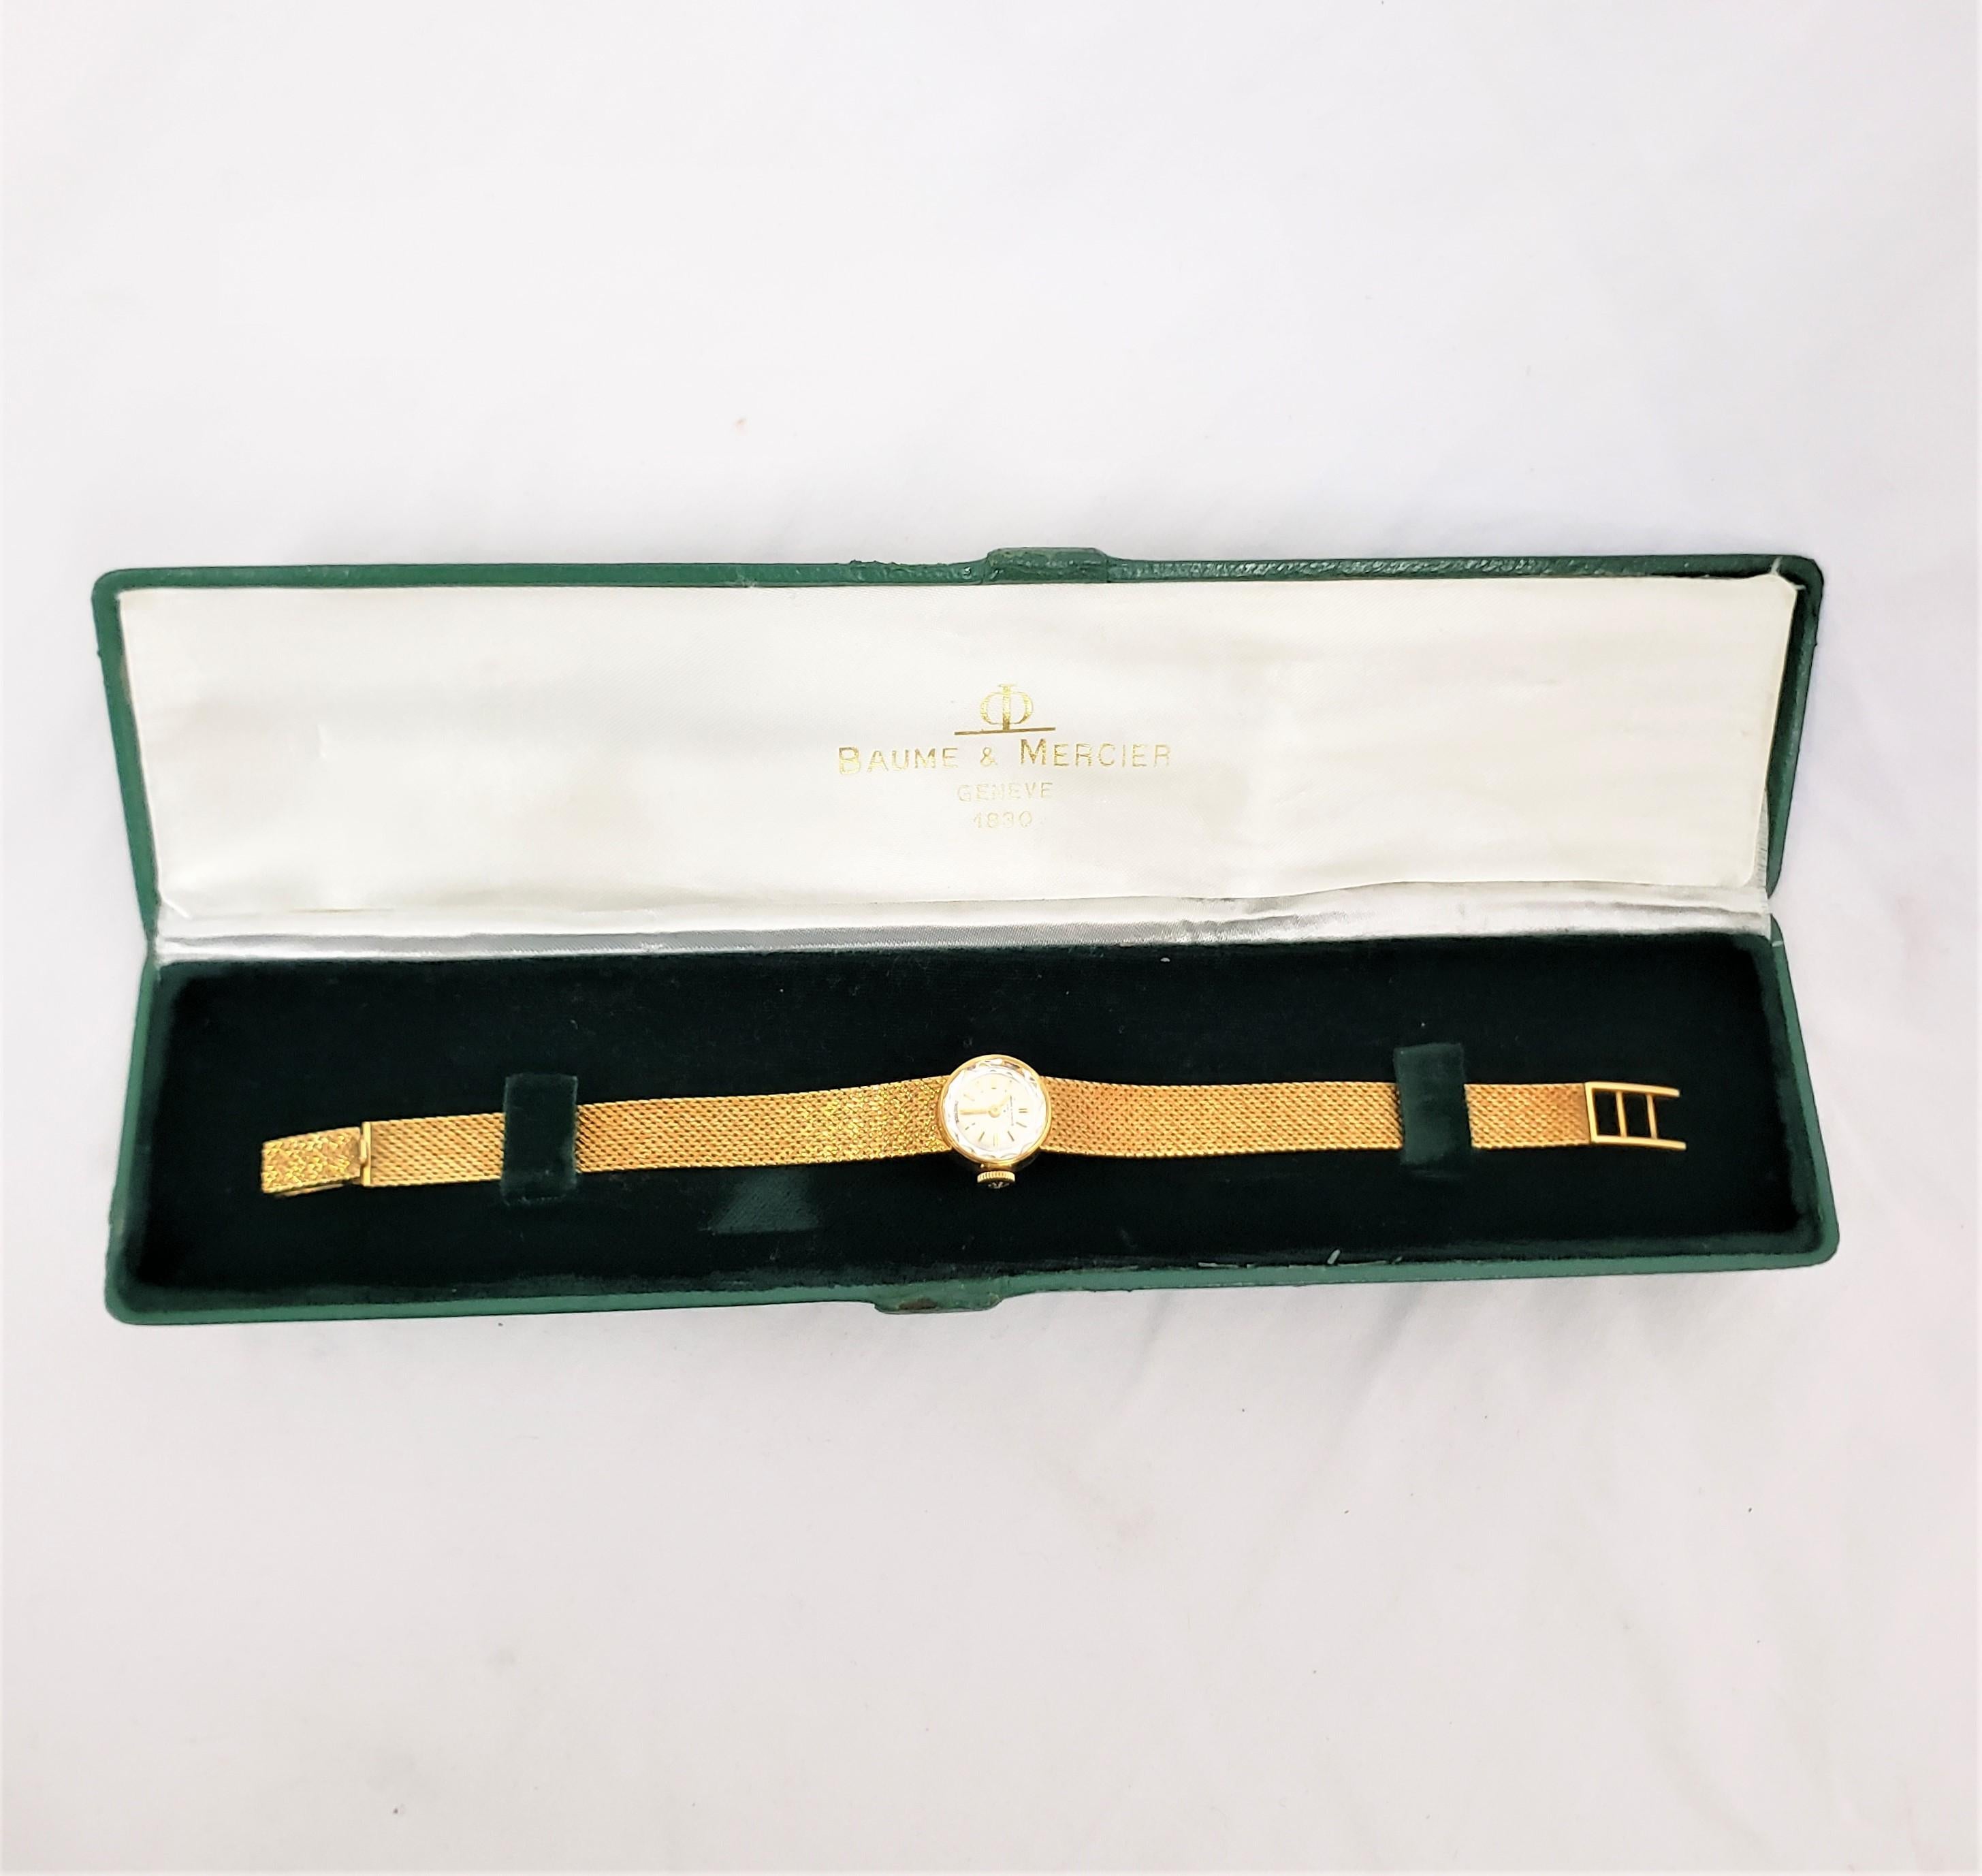 Diese antike Damenarmbanduhr wurde von der bekannten Firma Baume et Mercier aus der Schweiz um 1920 im Stil der Zeit hergestellt. Die Uhr und das Armband bestehen aus achtzehnkarätigem Gelbgold. Das Zifferblatt ist in einem silbernen Ton mit einer